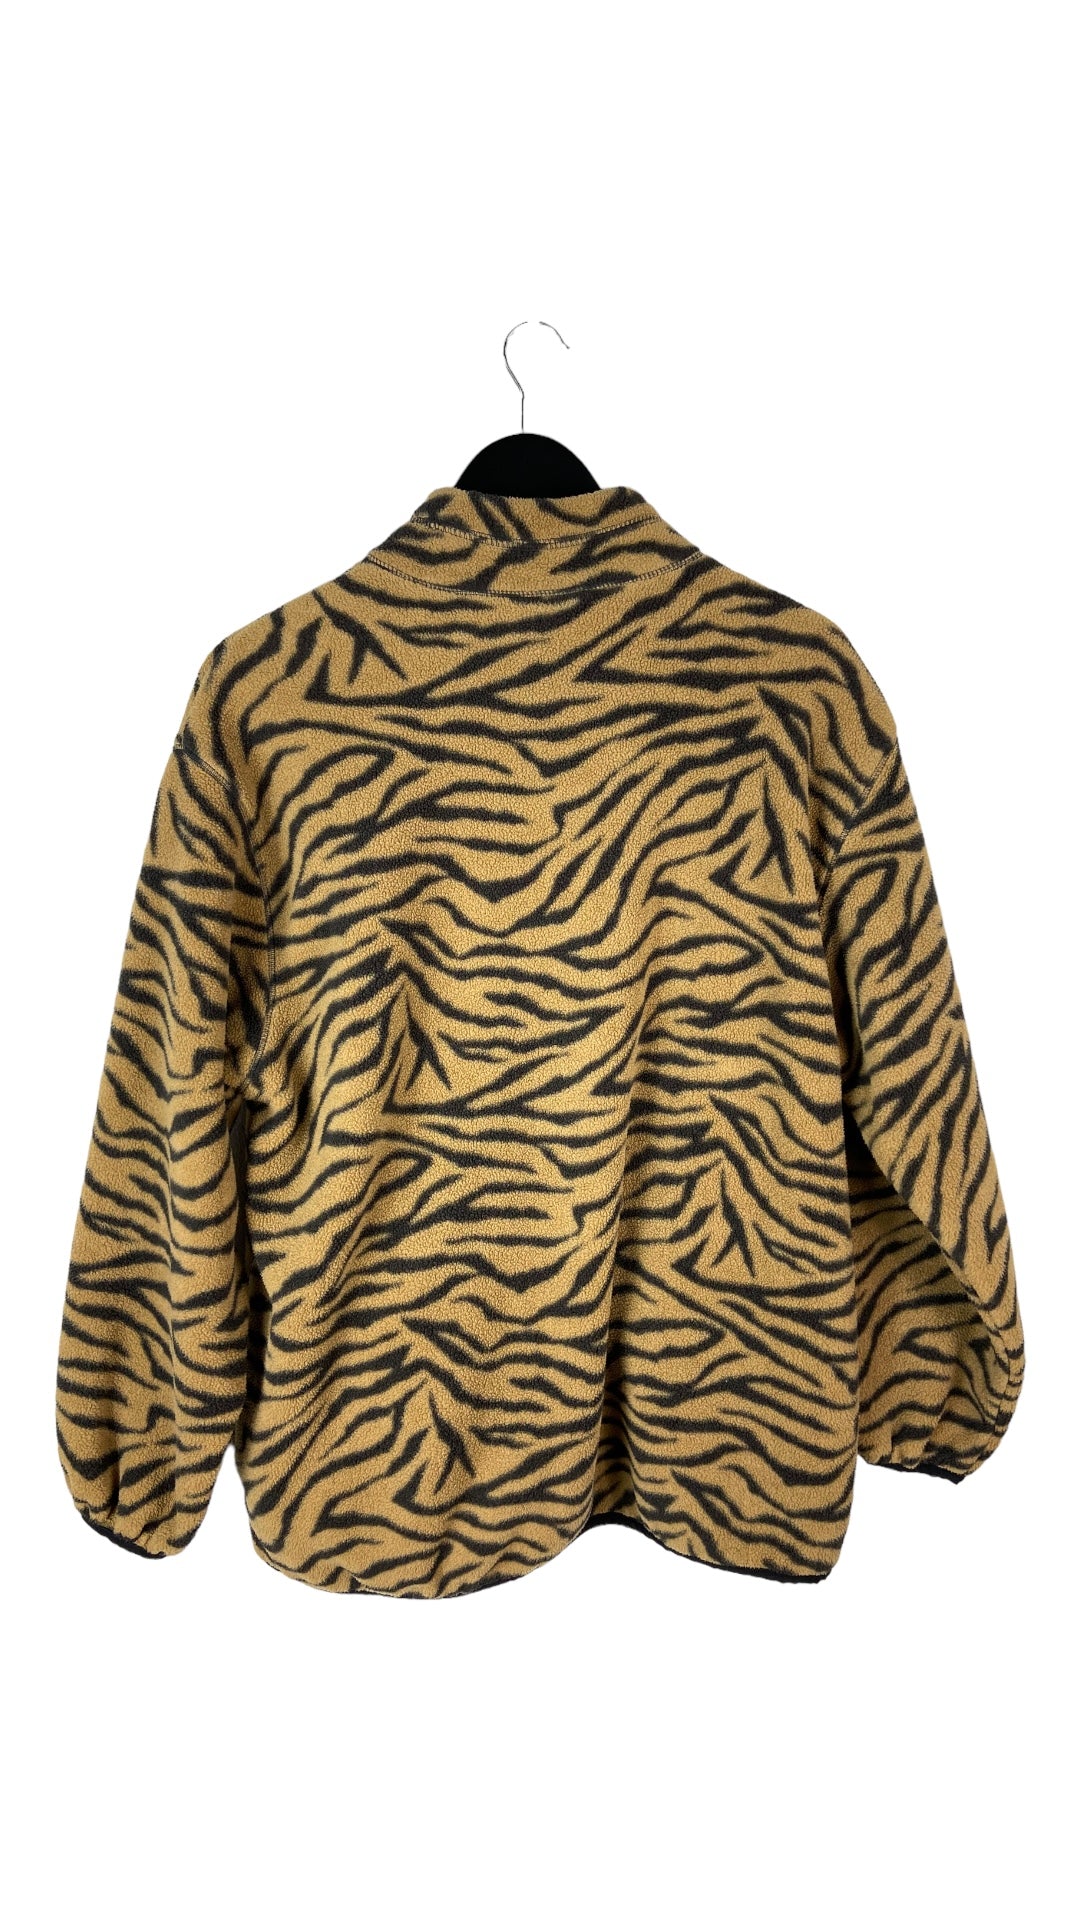 VTG Tiger Print Zip Fleece Jacket Sz L